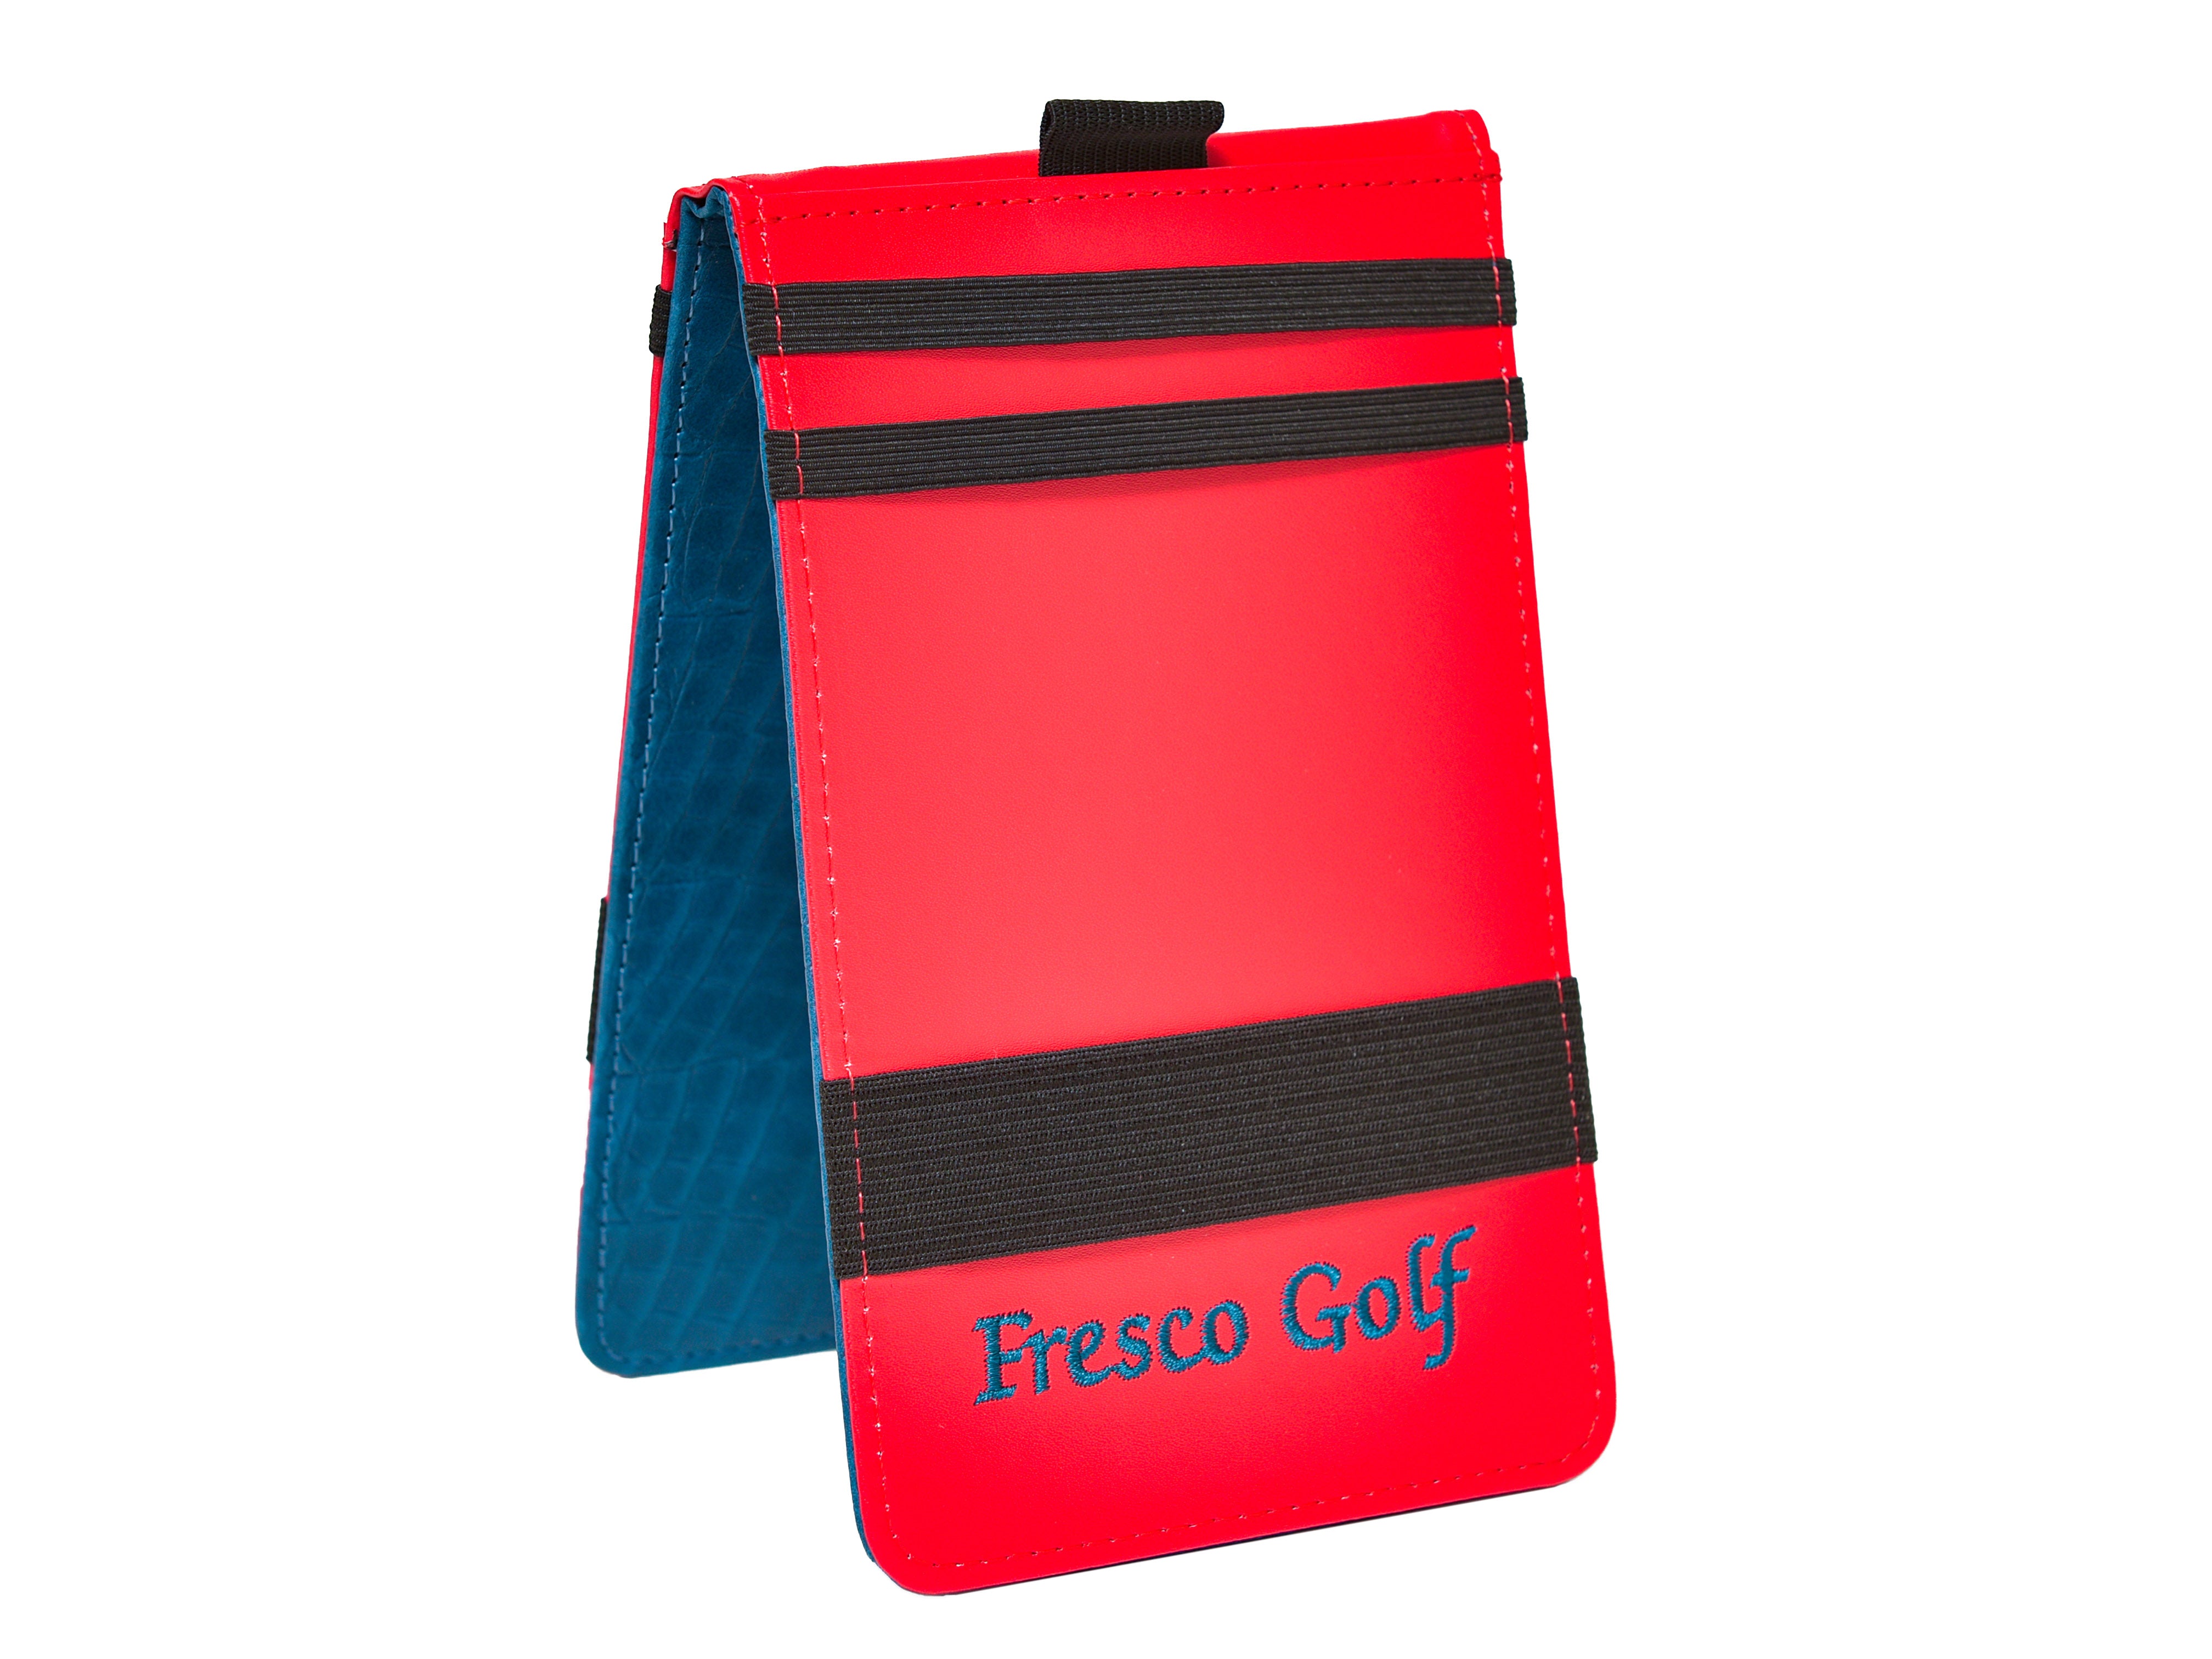 Fresco Golf Yardage Book Tiffany Blue